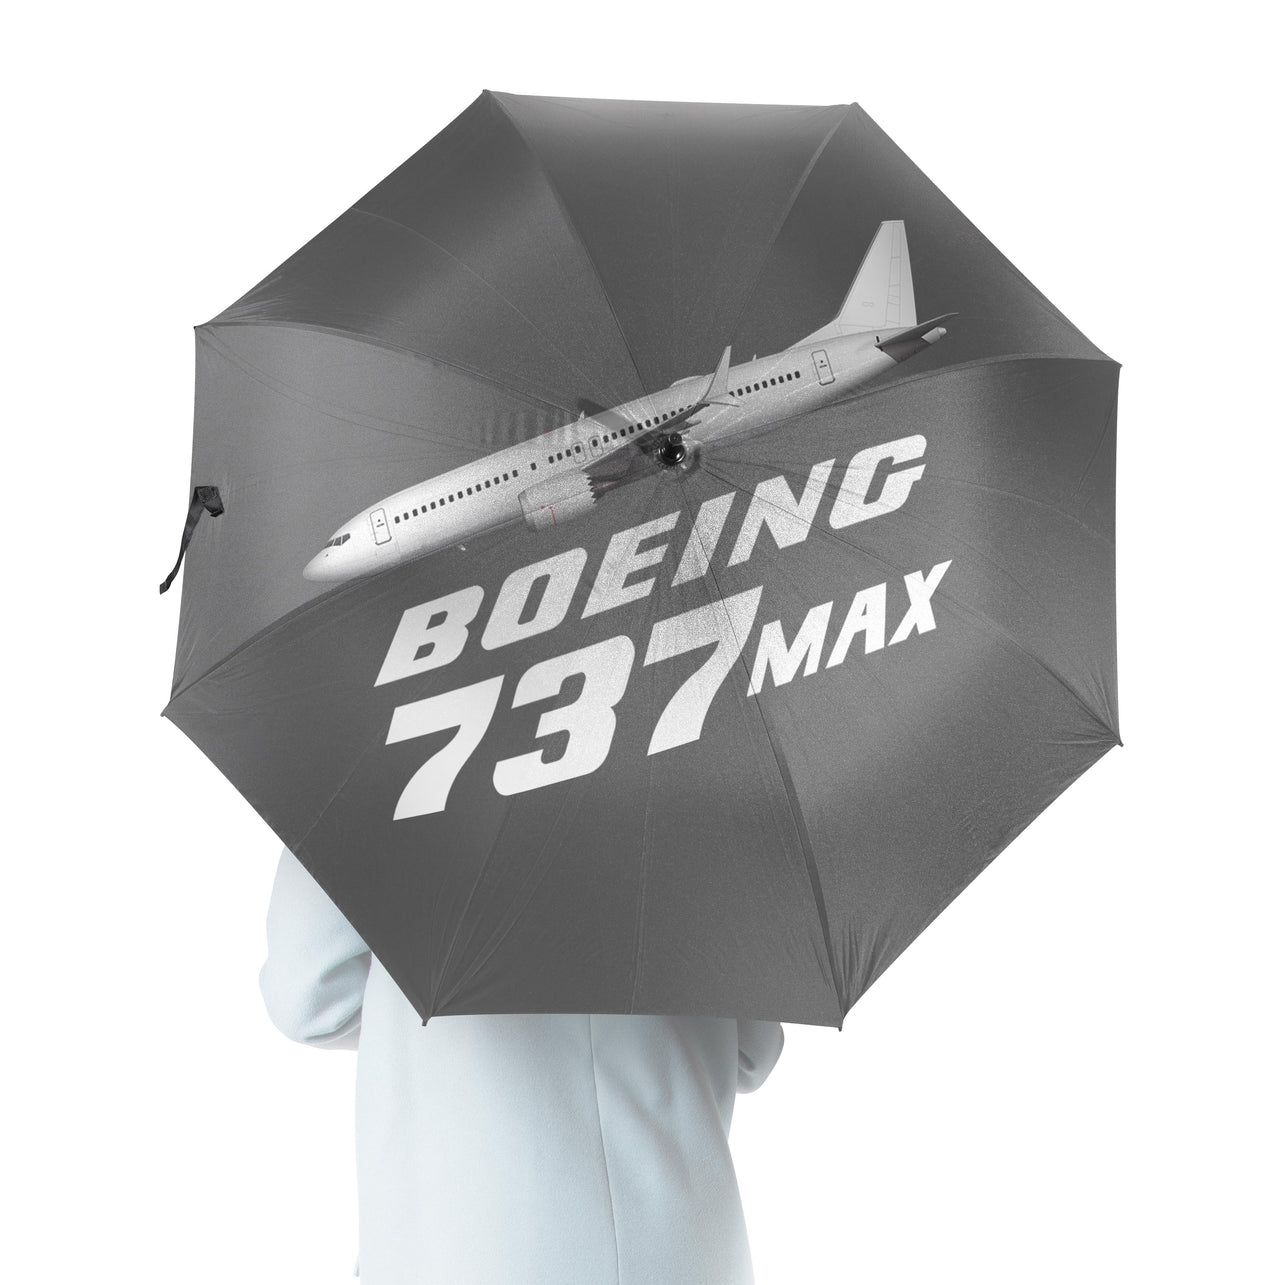 The Boeing 737Max Designed Umbrella